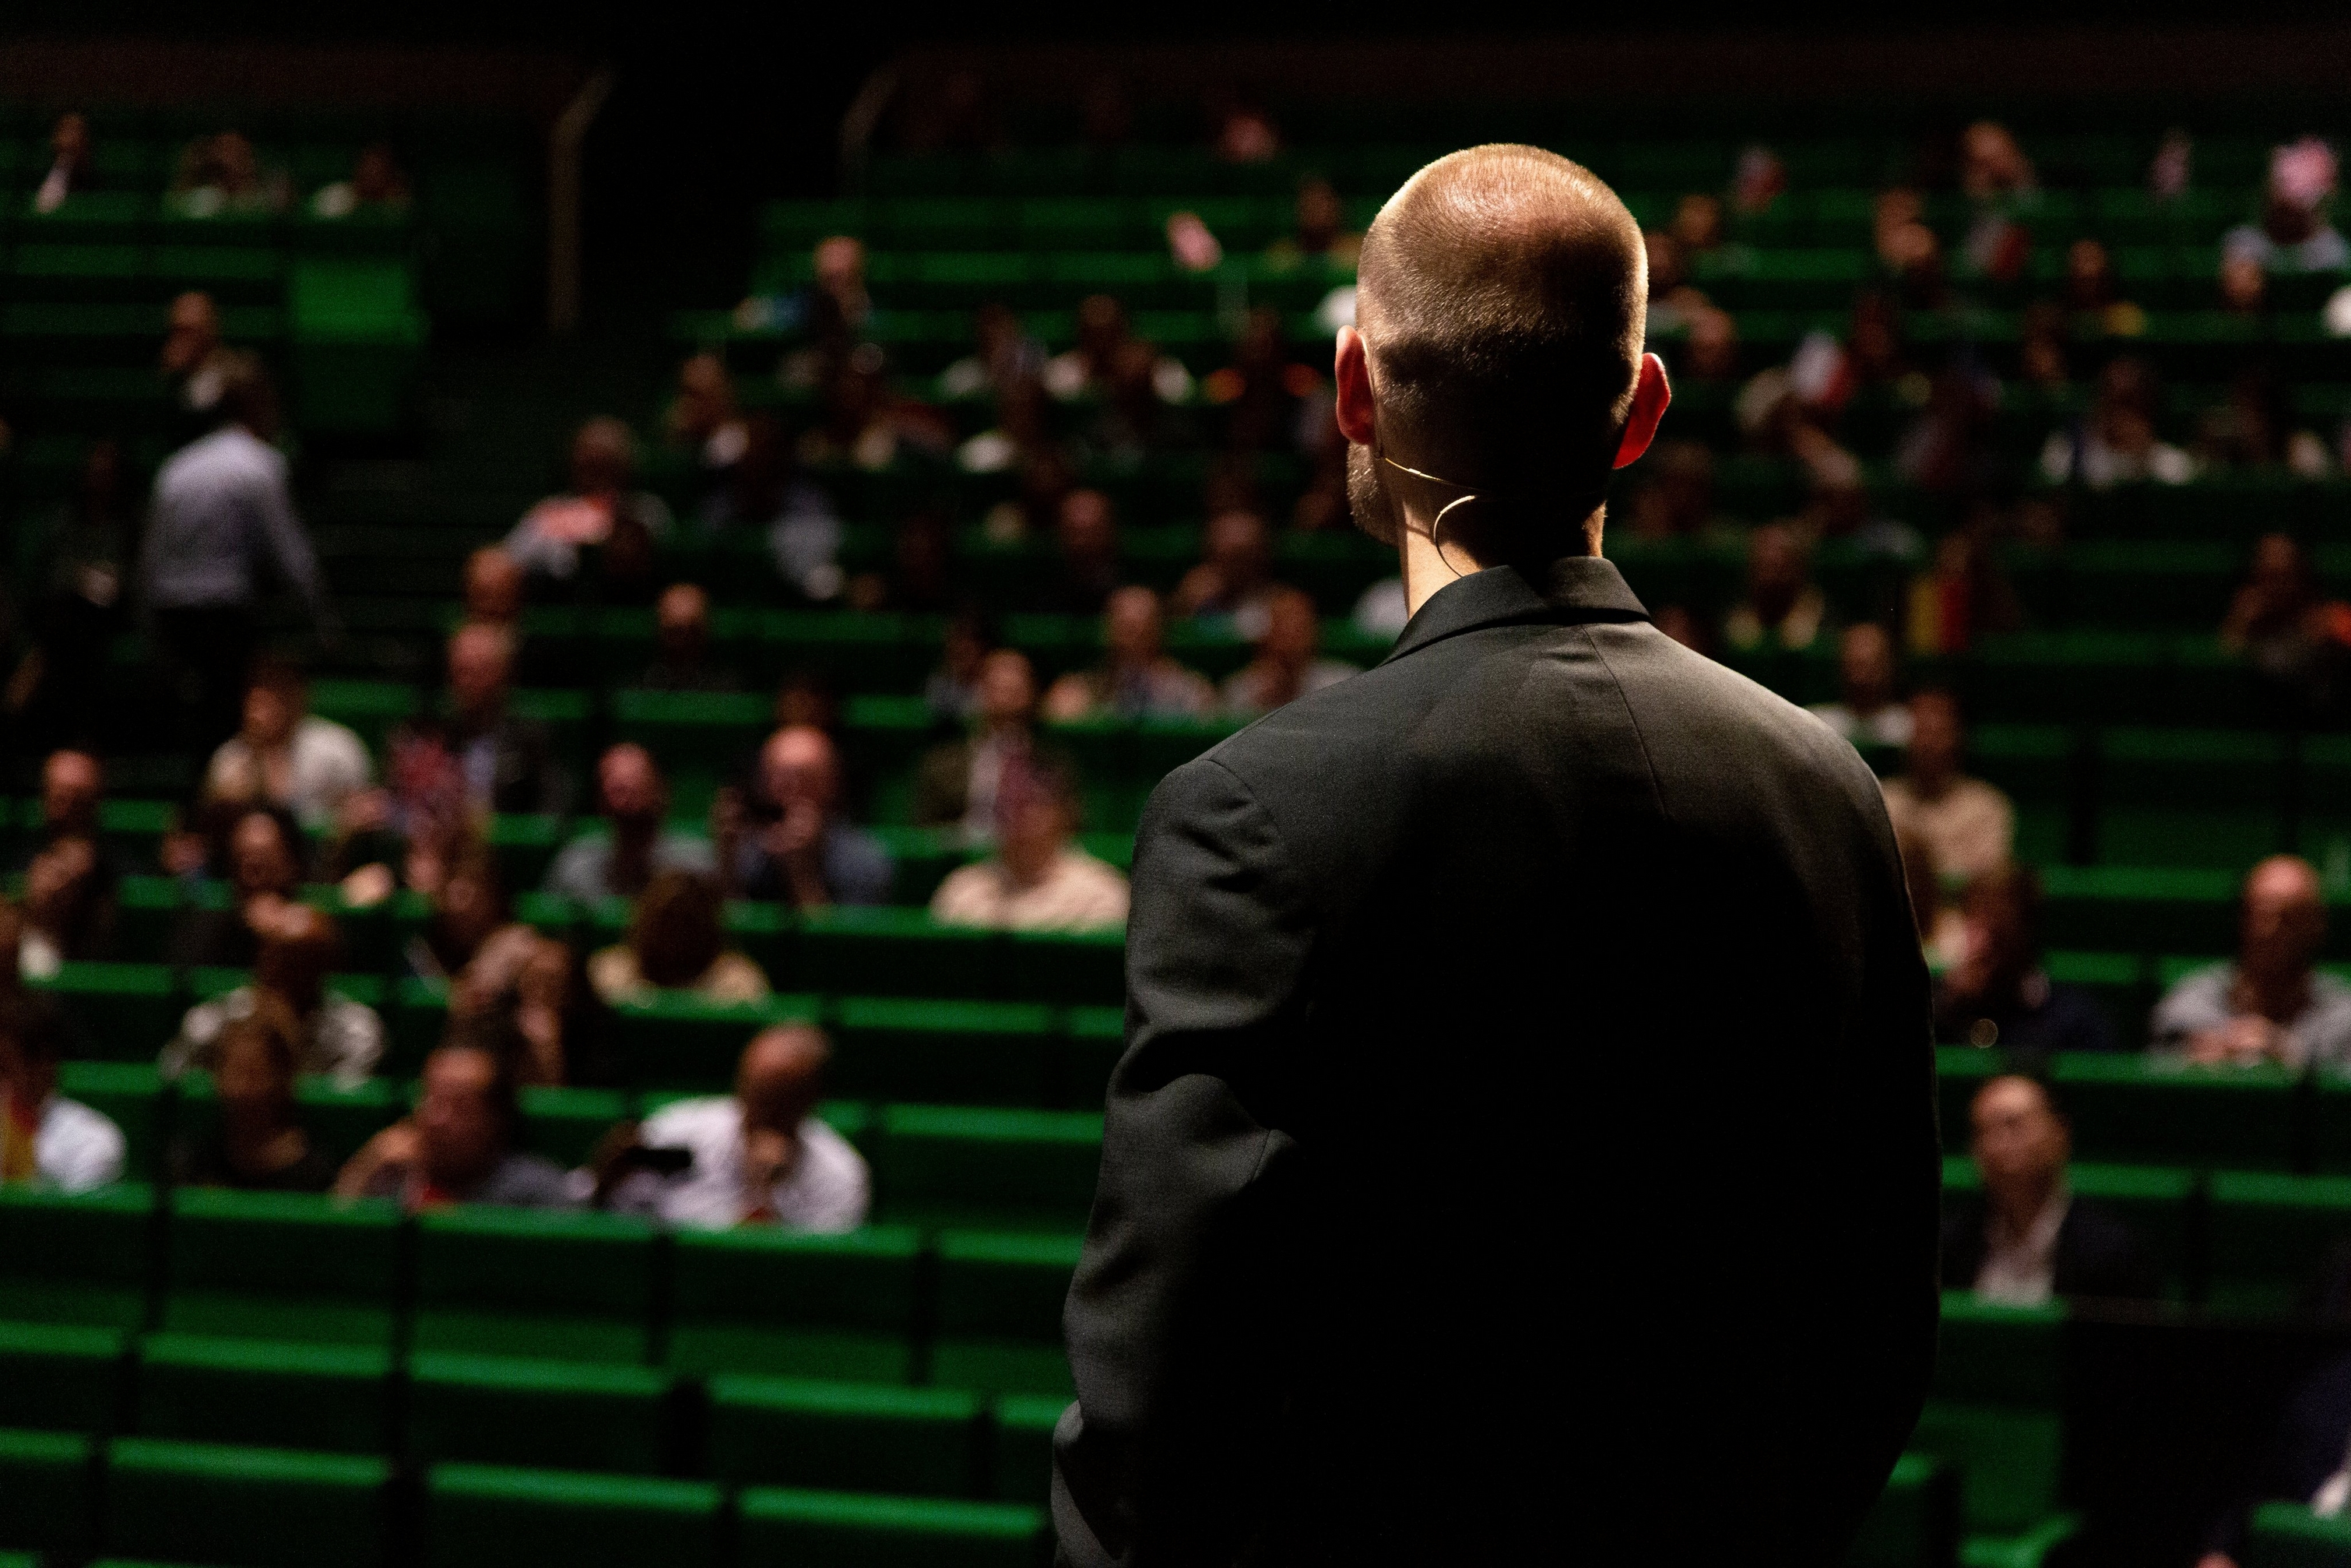 Hombre con traje negro frente a un público en un auditorio con asientos verdes.